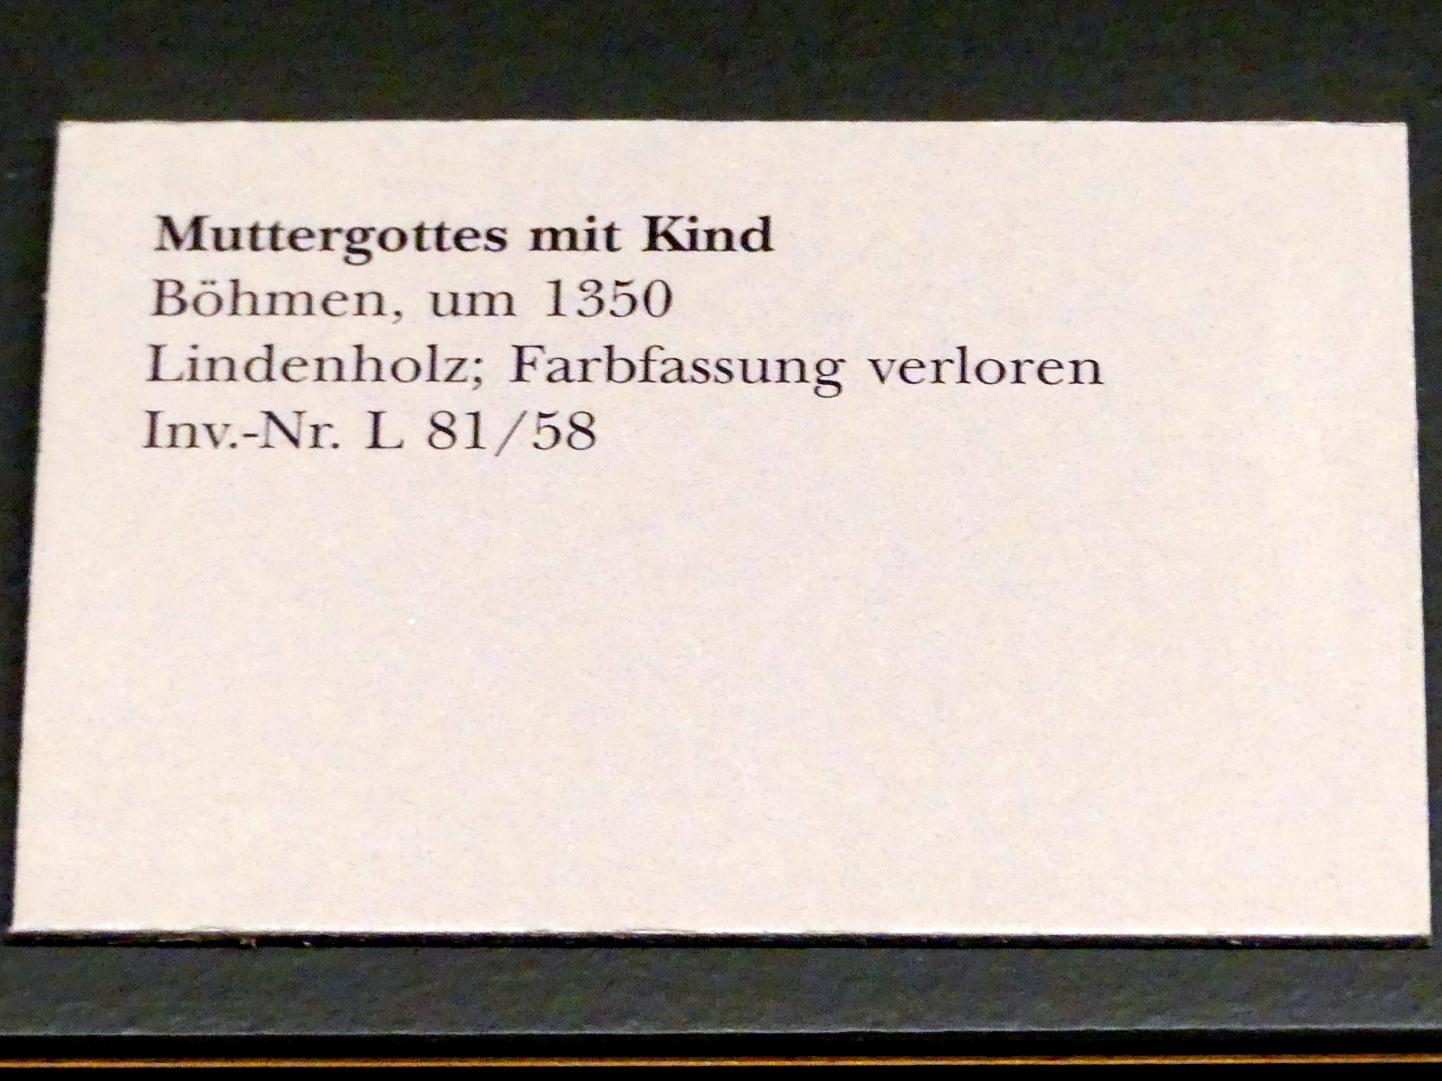 Muttergottes mit Kind, München, Bayerisches Nationalmuseum, Saal 7, um 1350, Bild 3/3